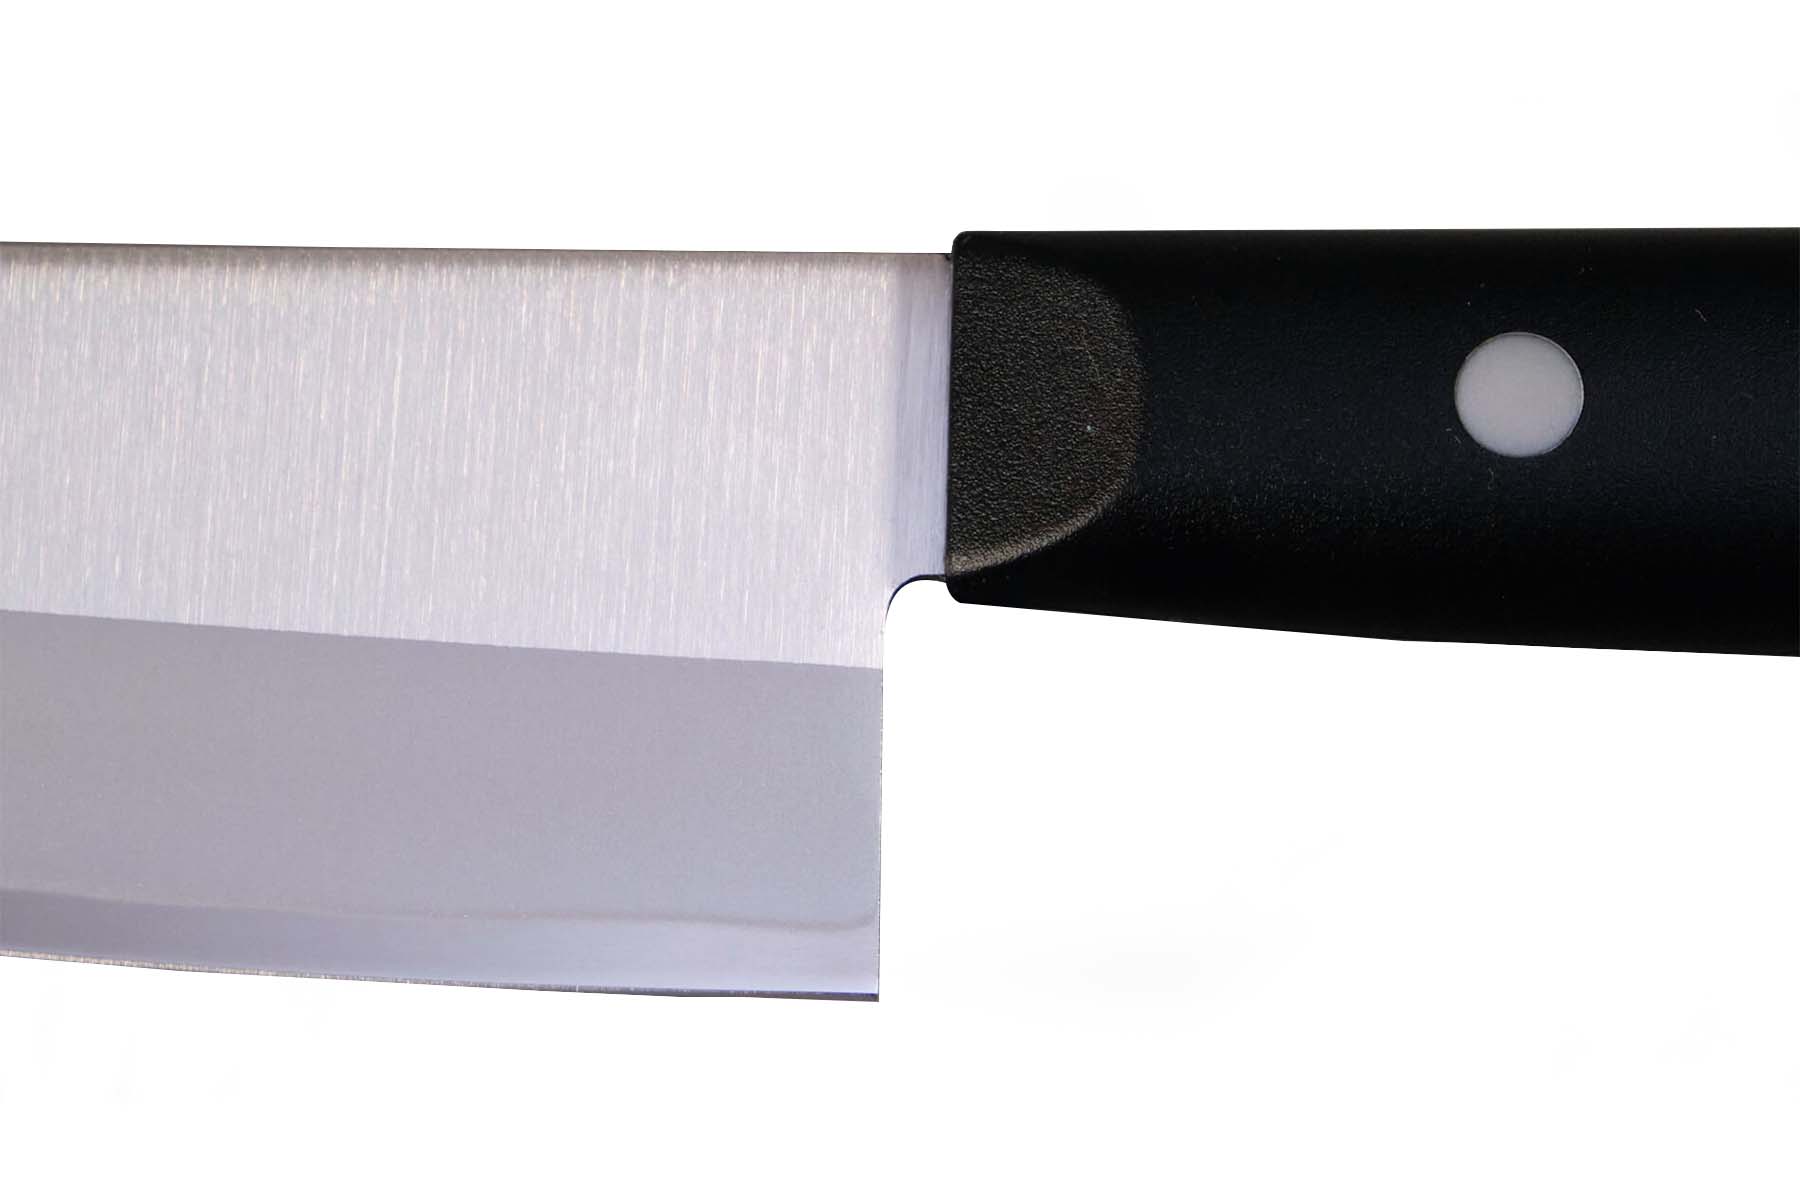 Couteau japonais Tojiro Dp Éco Santoku 17 cm